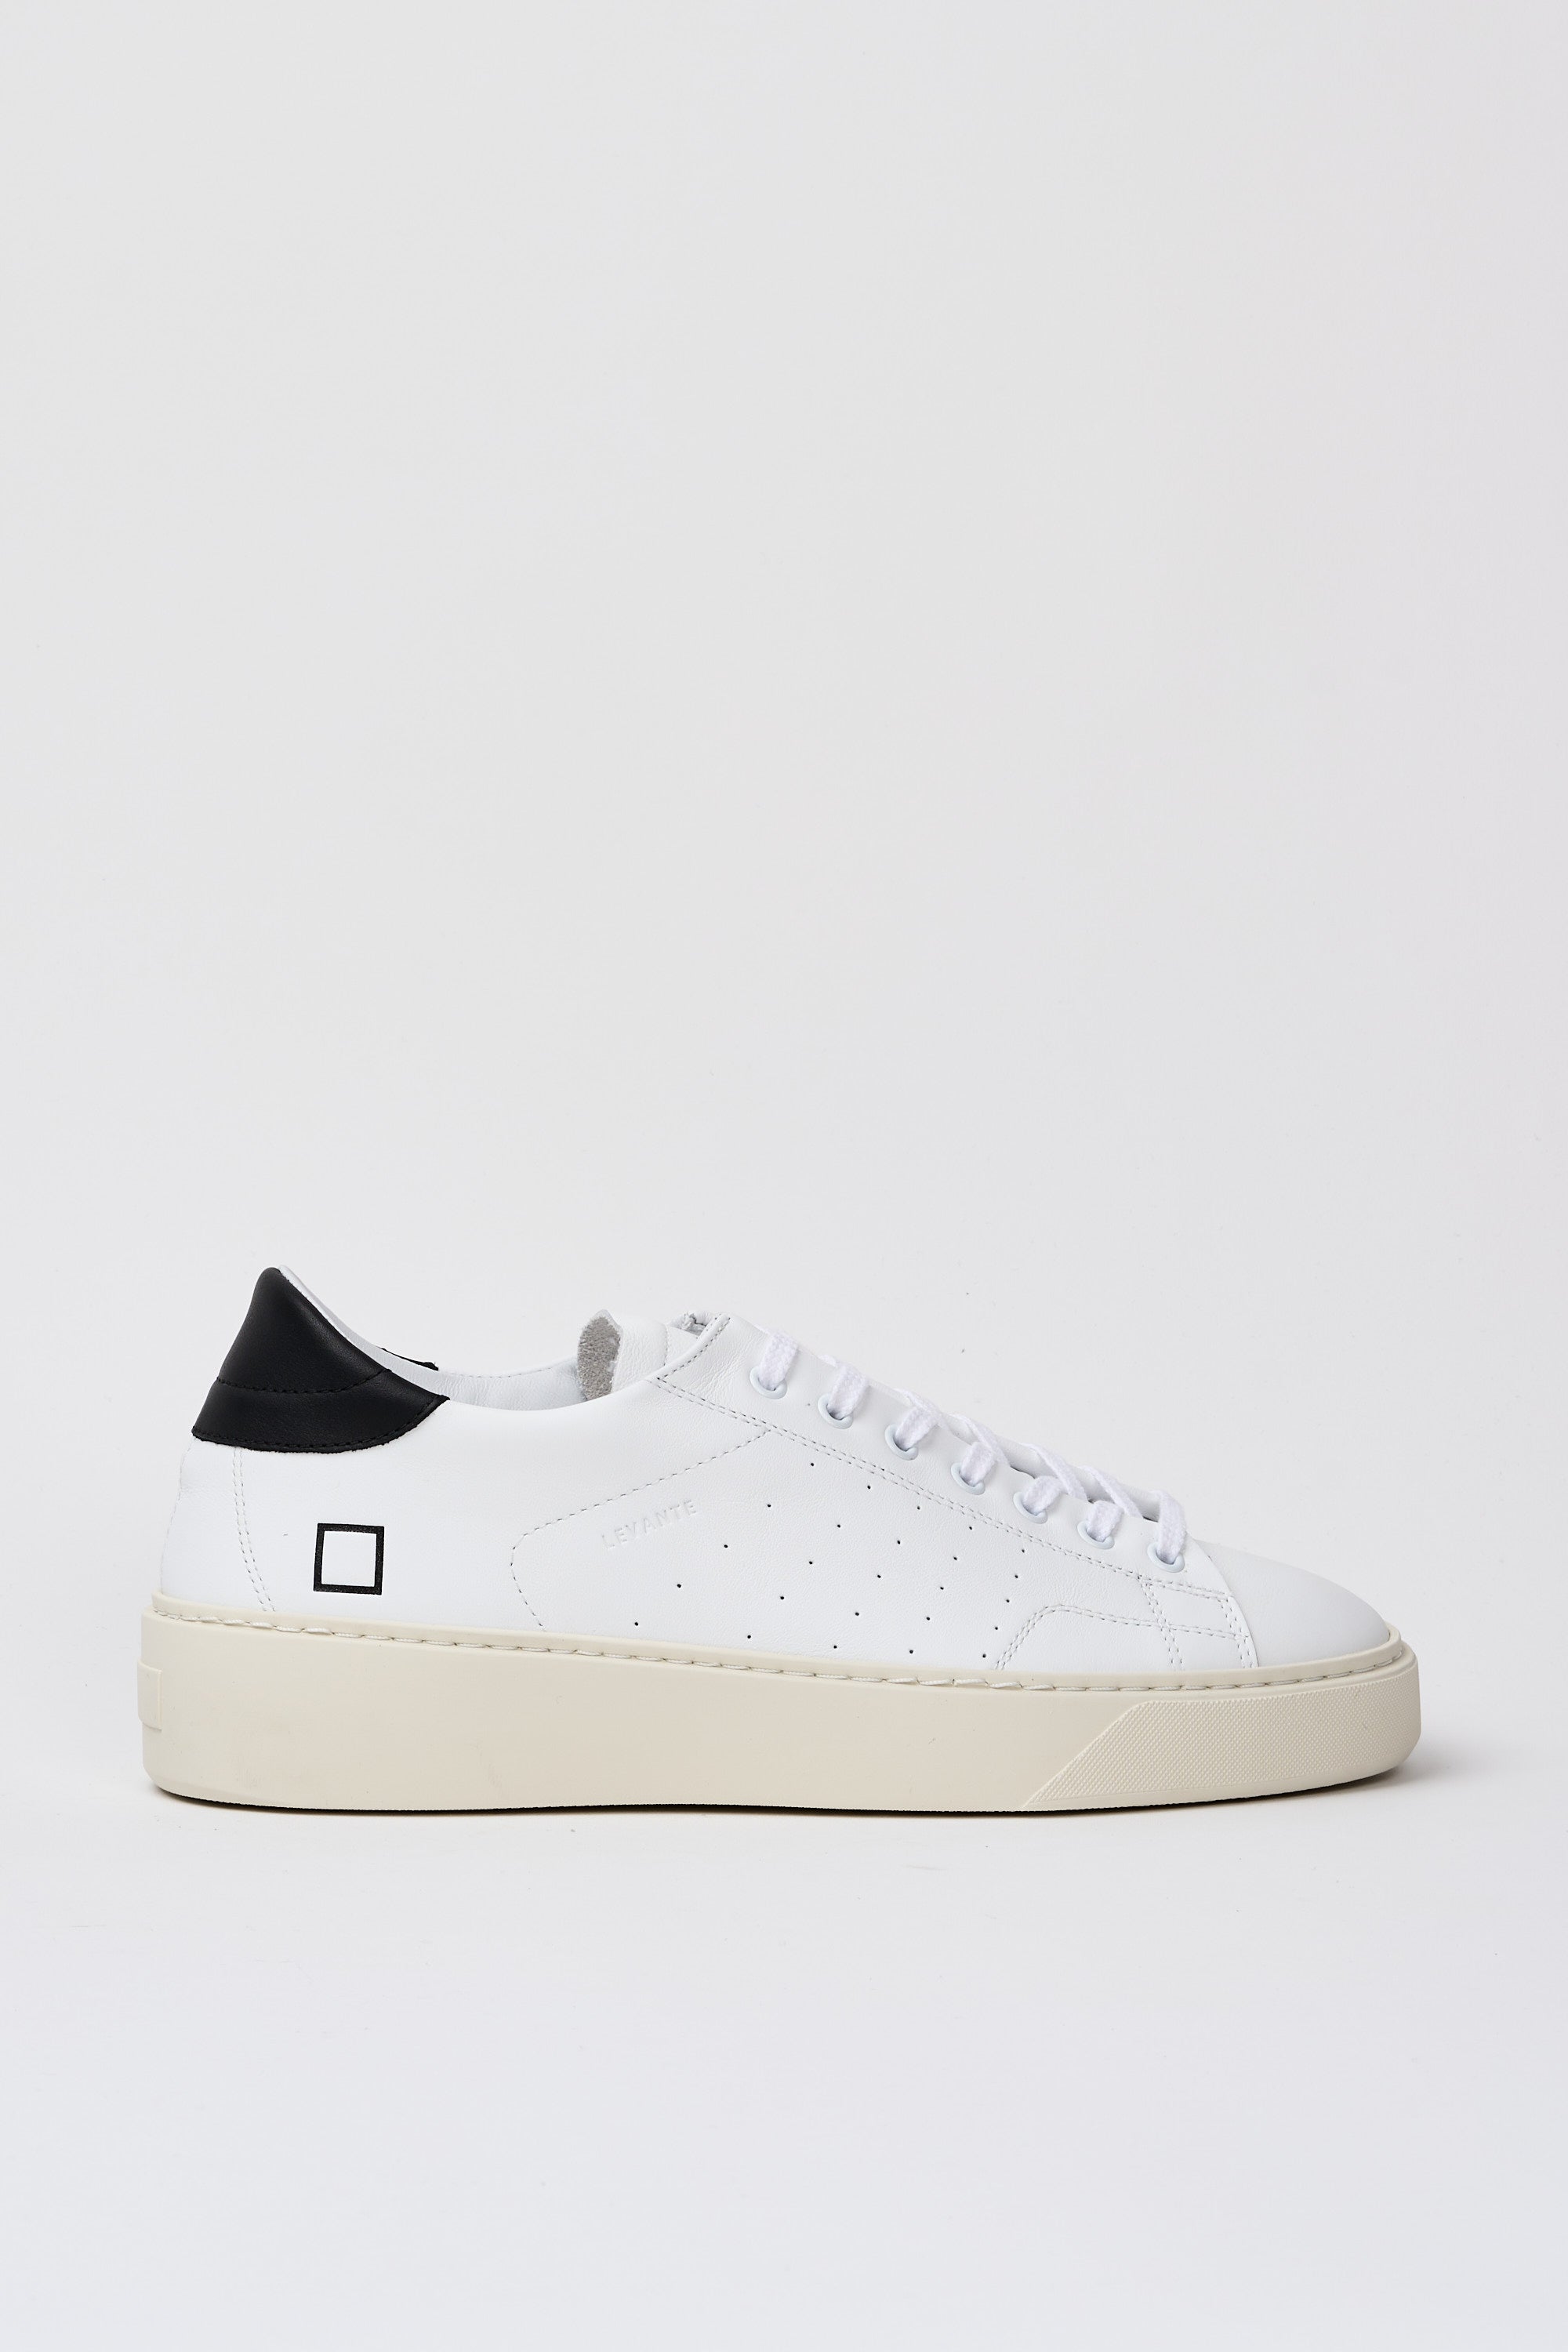 D.A.T.E. Sneaker Levante Leather White/Black-1